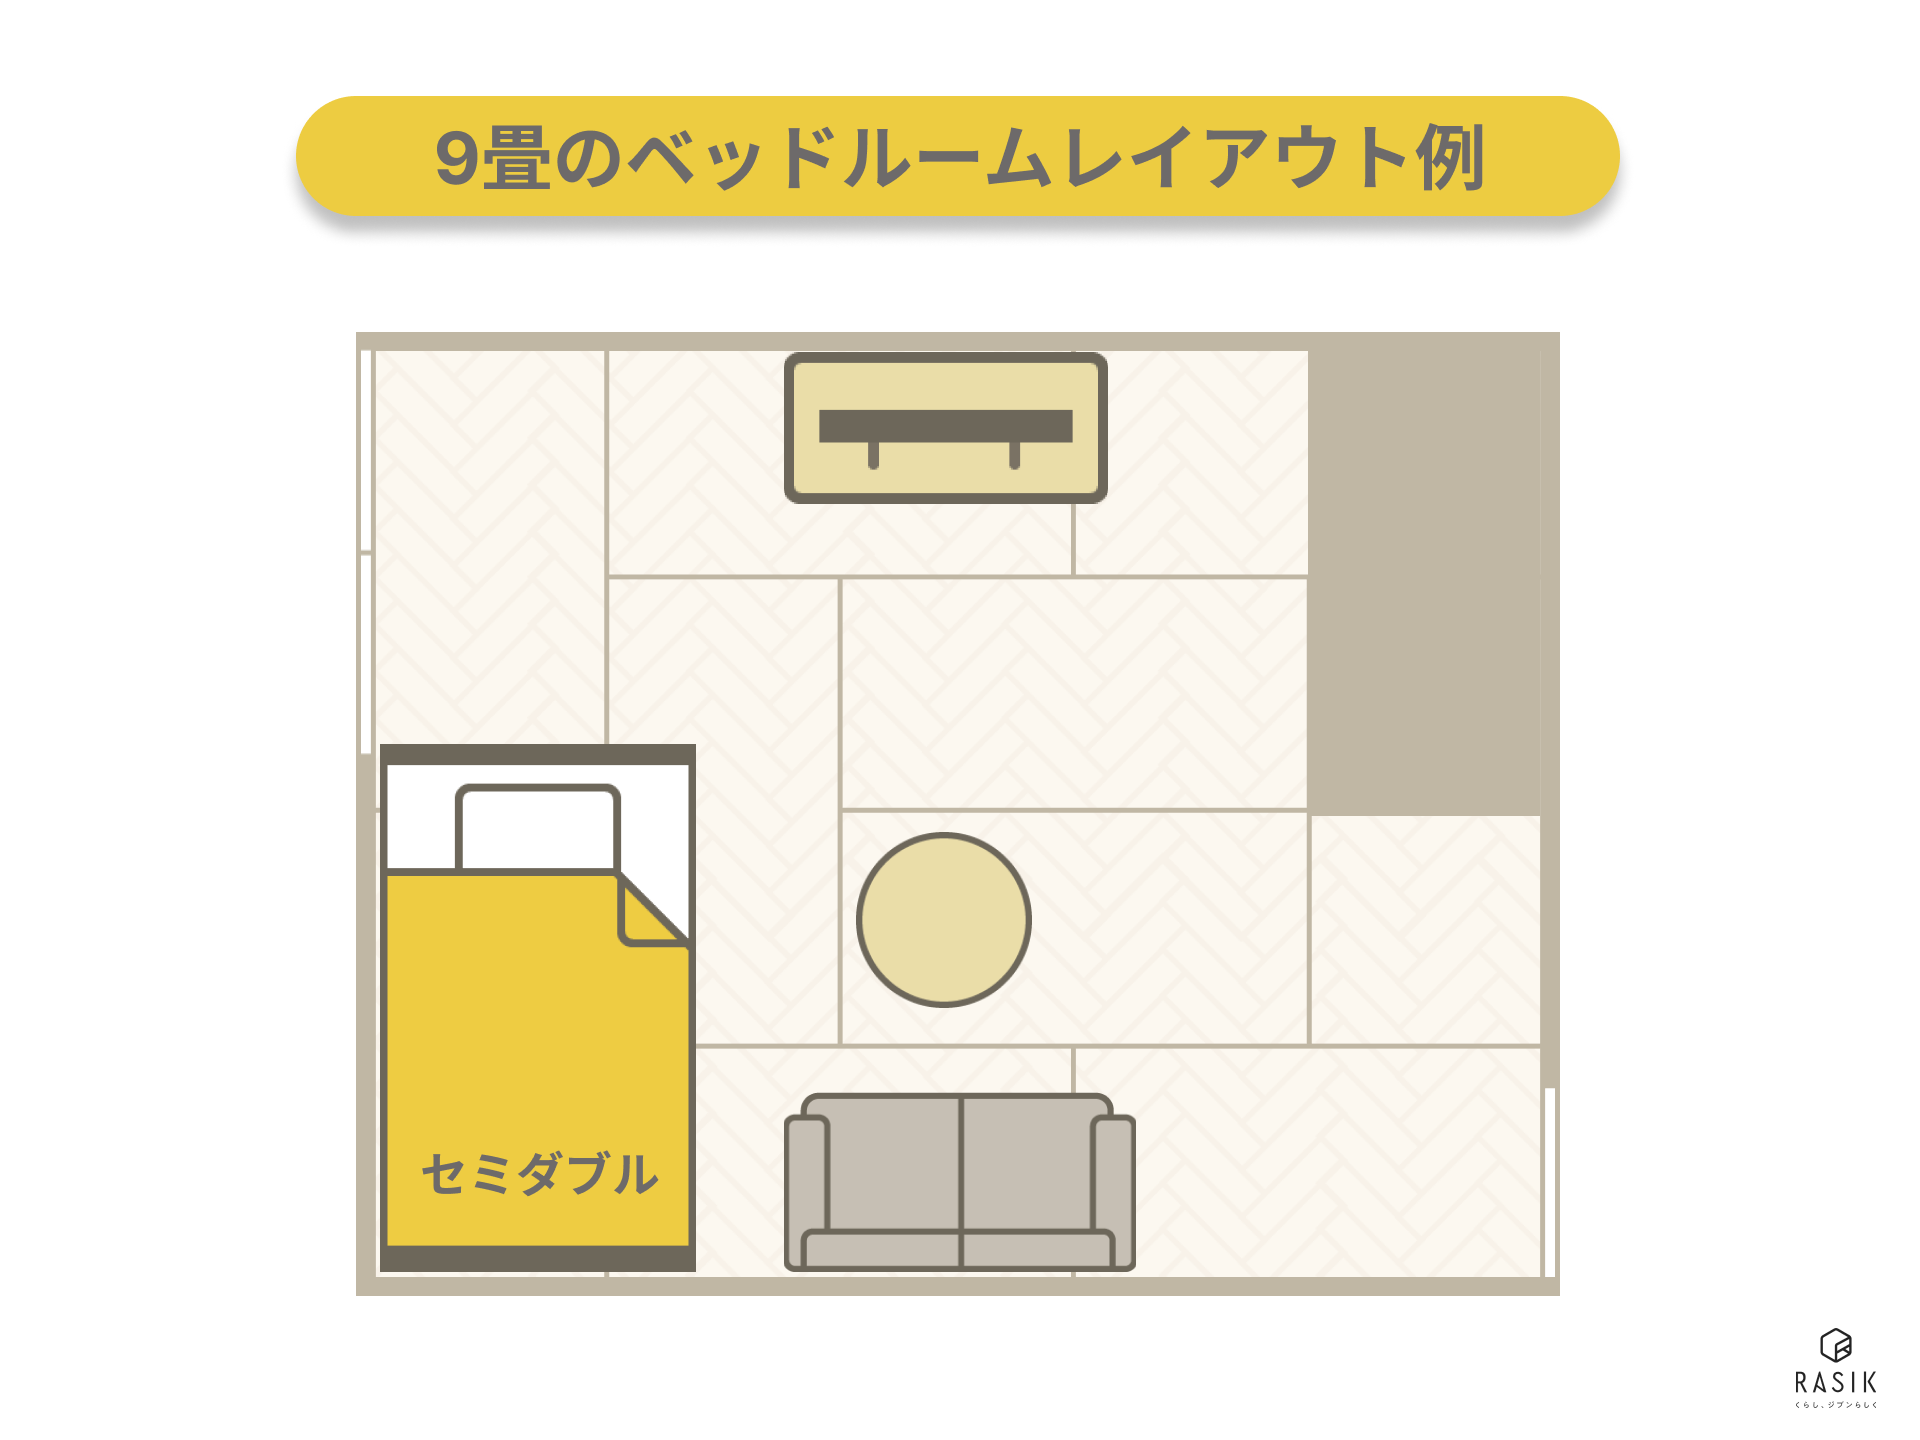 寝室はセミダブルベッドで部屋を広く使う9畳部屋のレイアウト